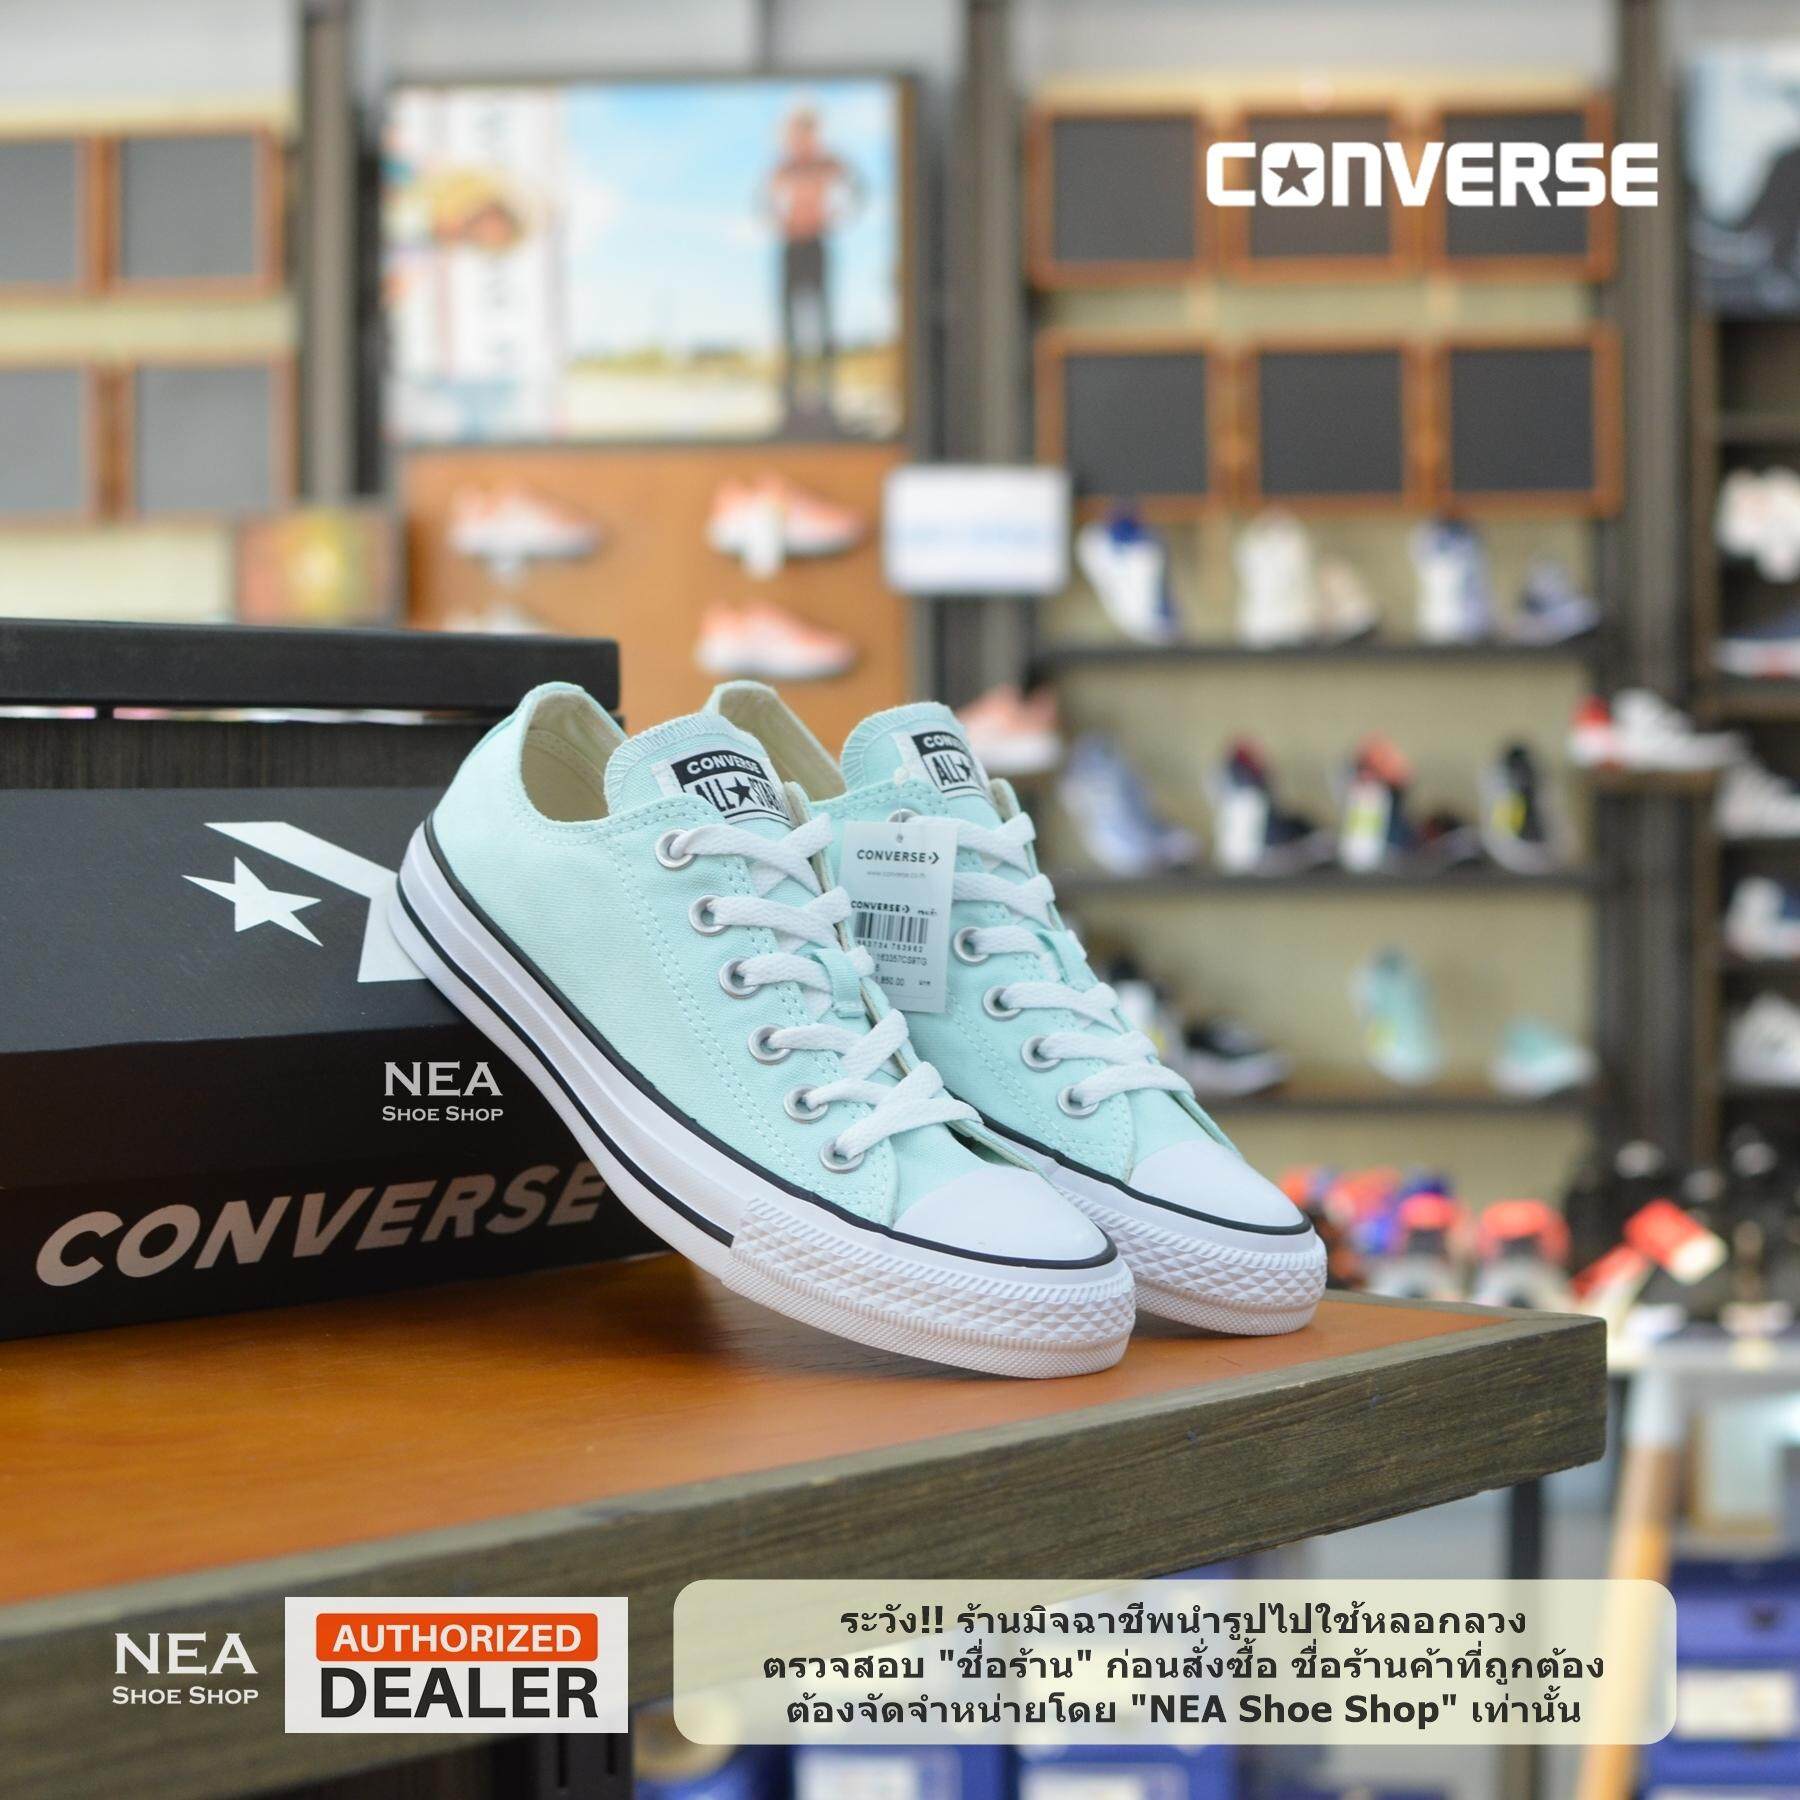 [ลิขสิทธิ์แท้] Converse All Star (Pastel) Teal Tint ox (Limited Edition) [W] NEA รองเท้าผ้าใบ คอนเวิร์ส สีพาสเทล เขียวอ่อน